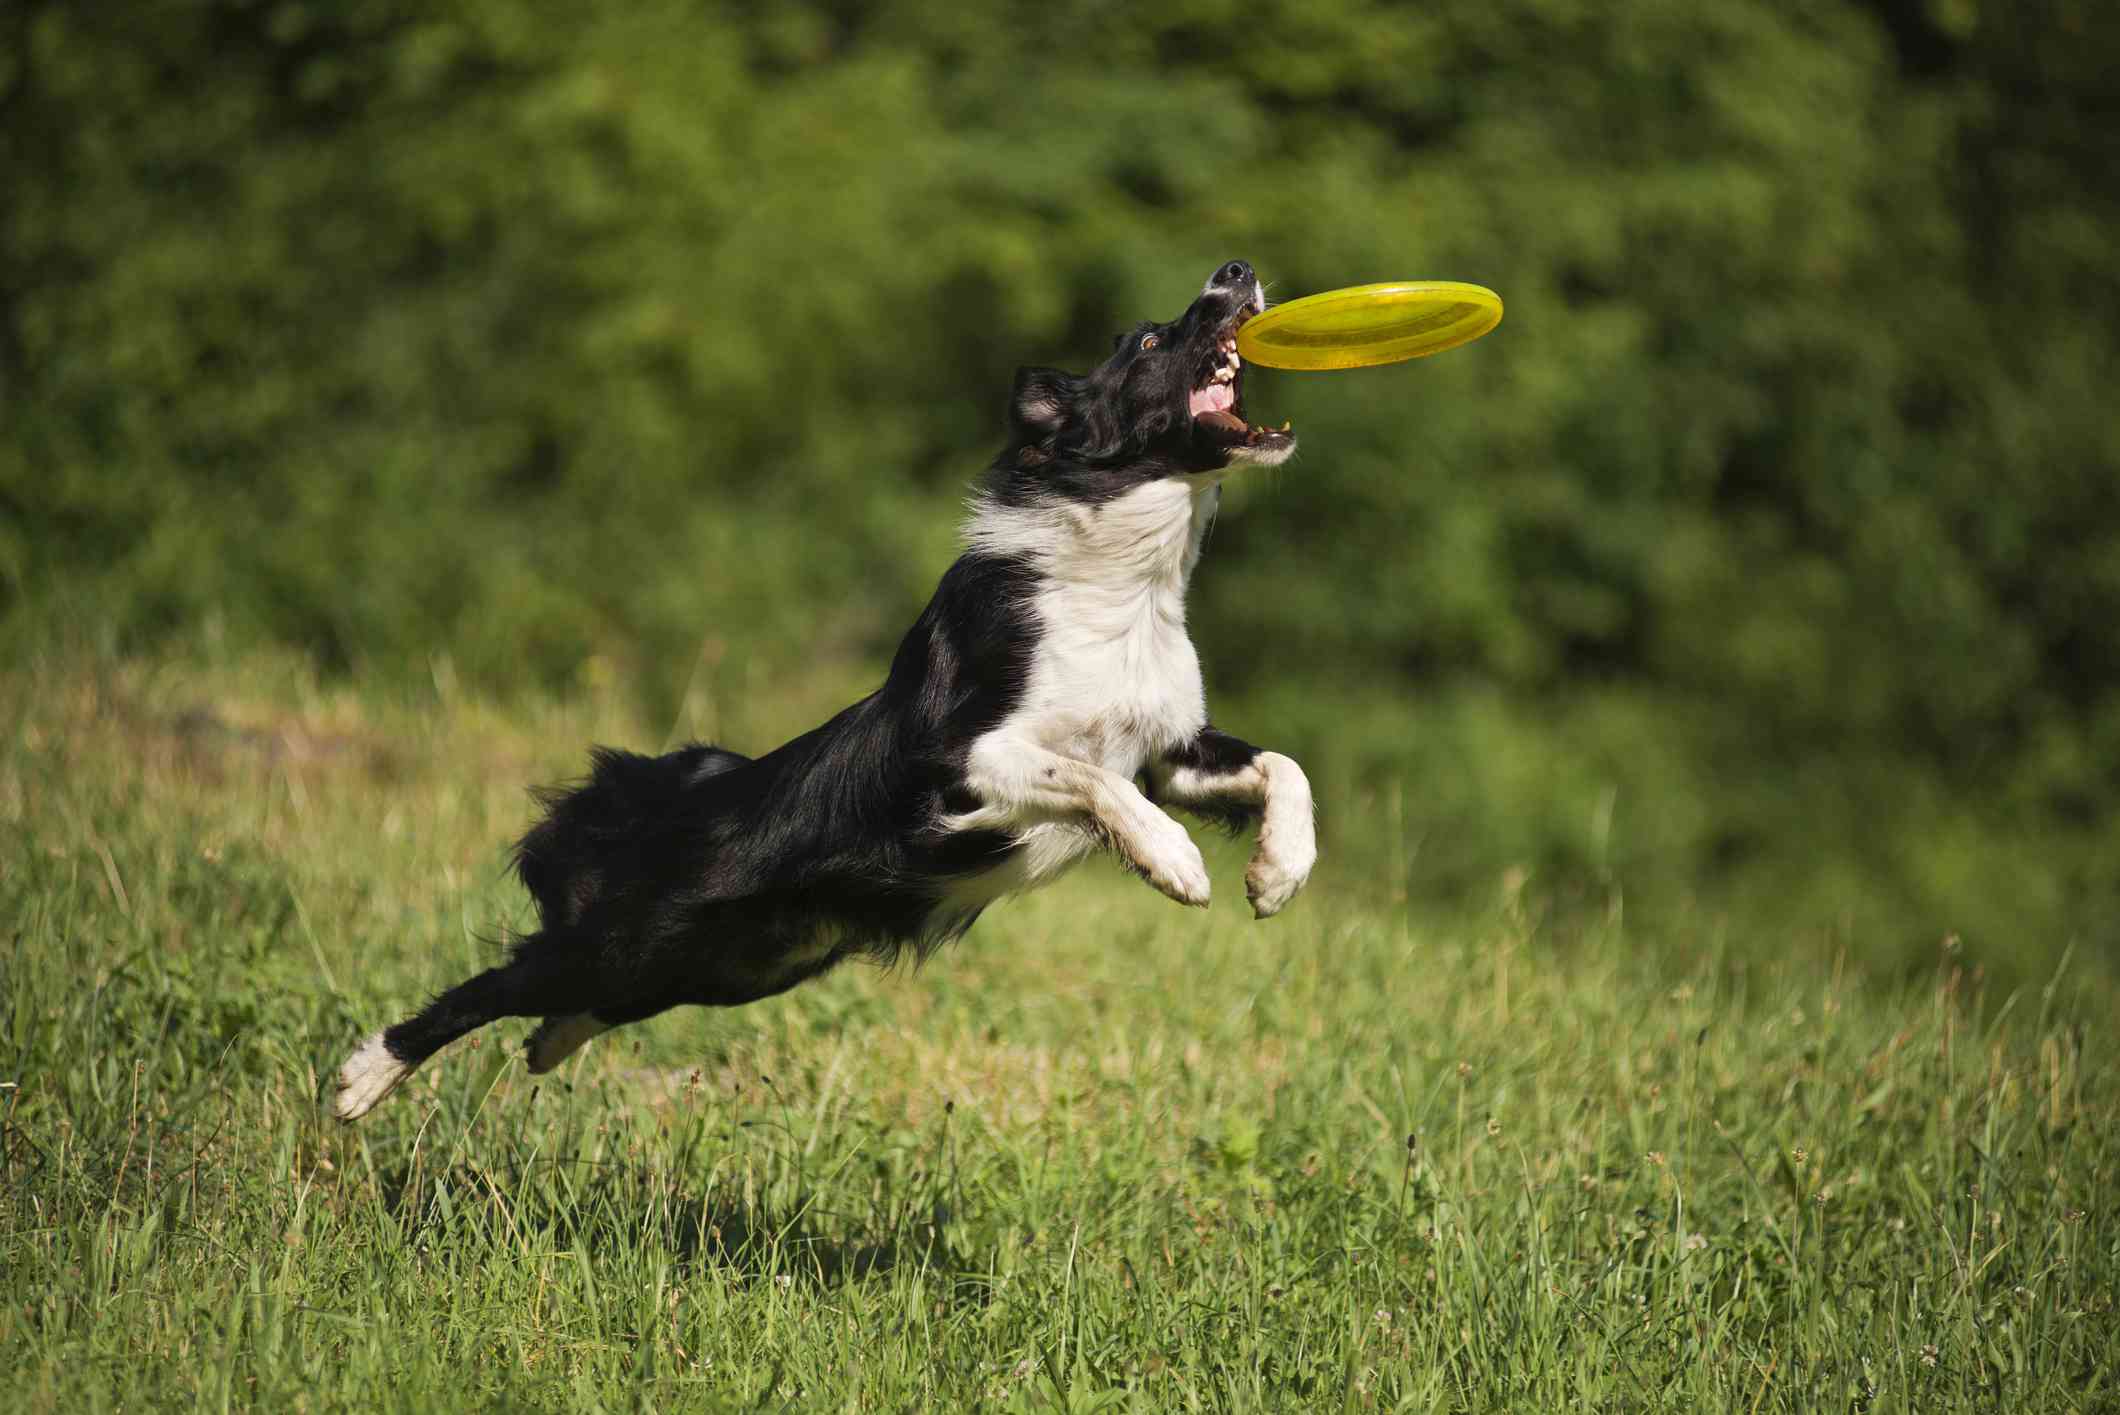 border collie saltando de la hierba verde para coger un frisbee amarillo en la boca